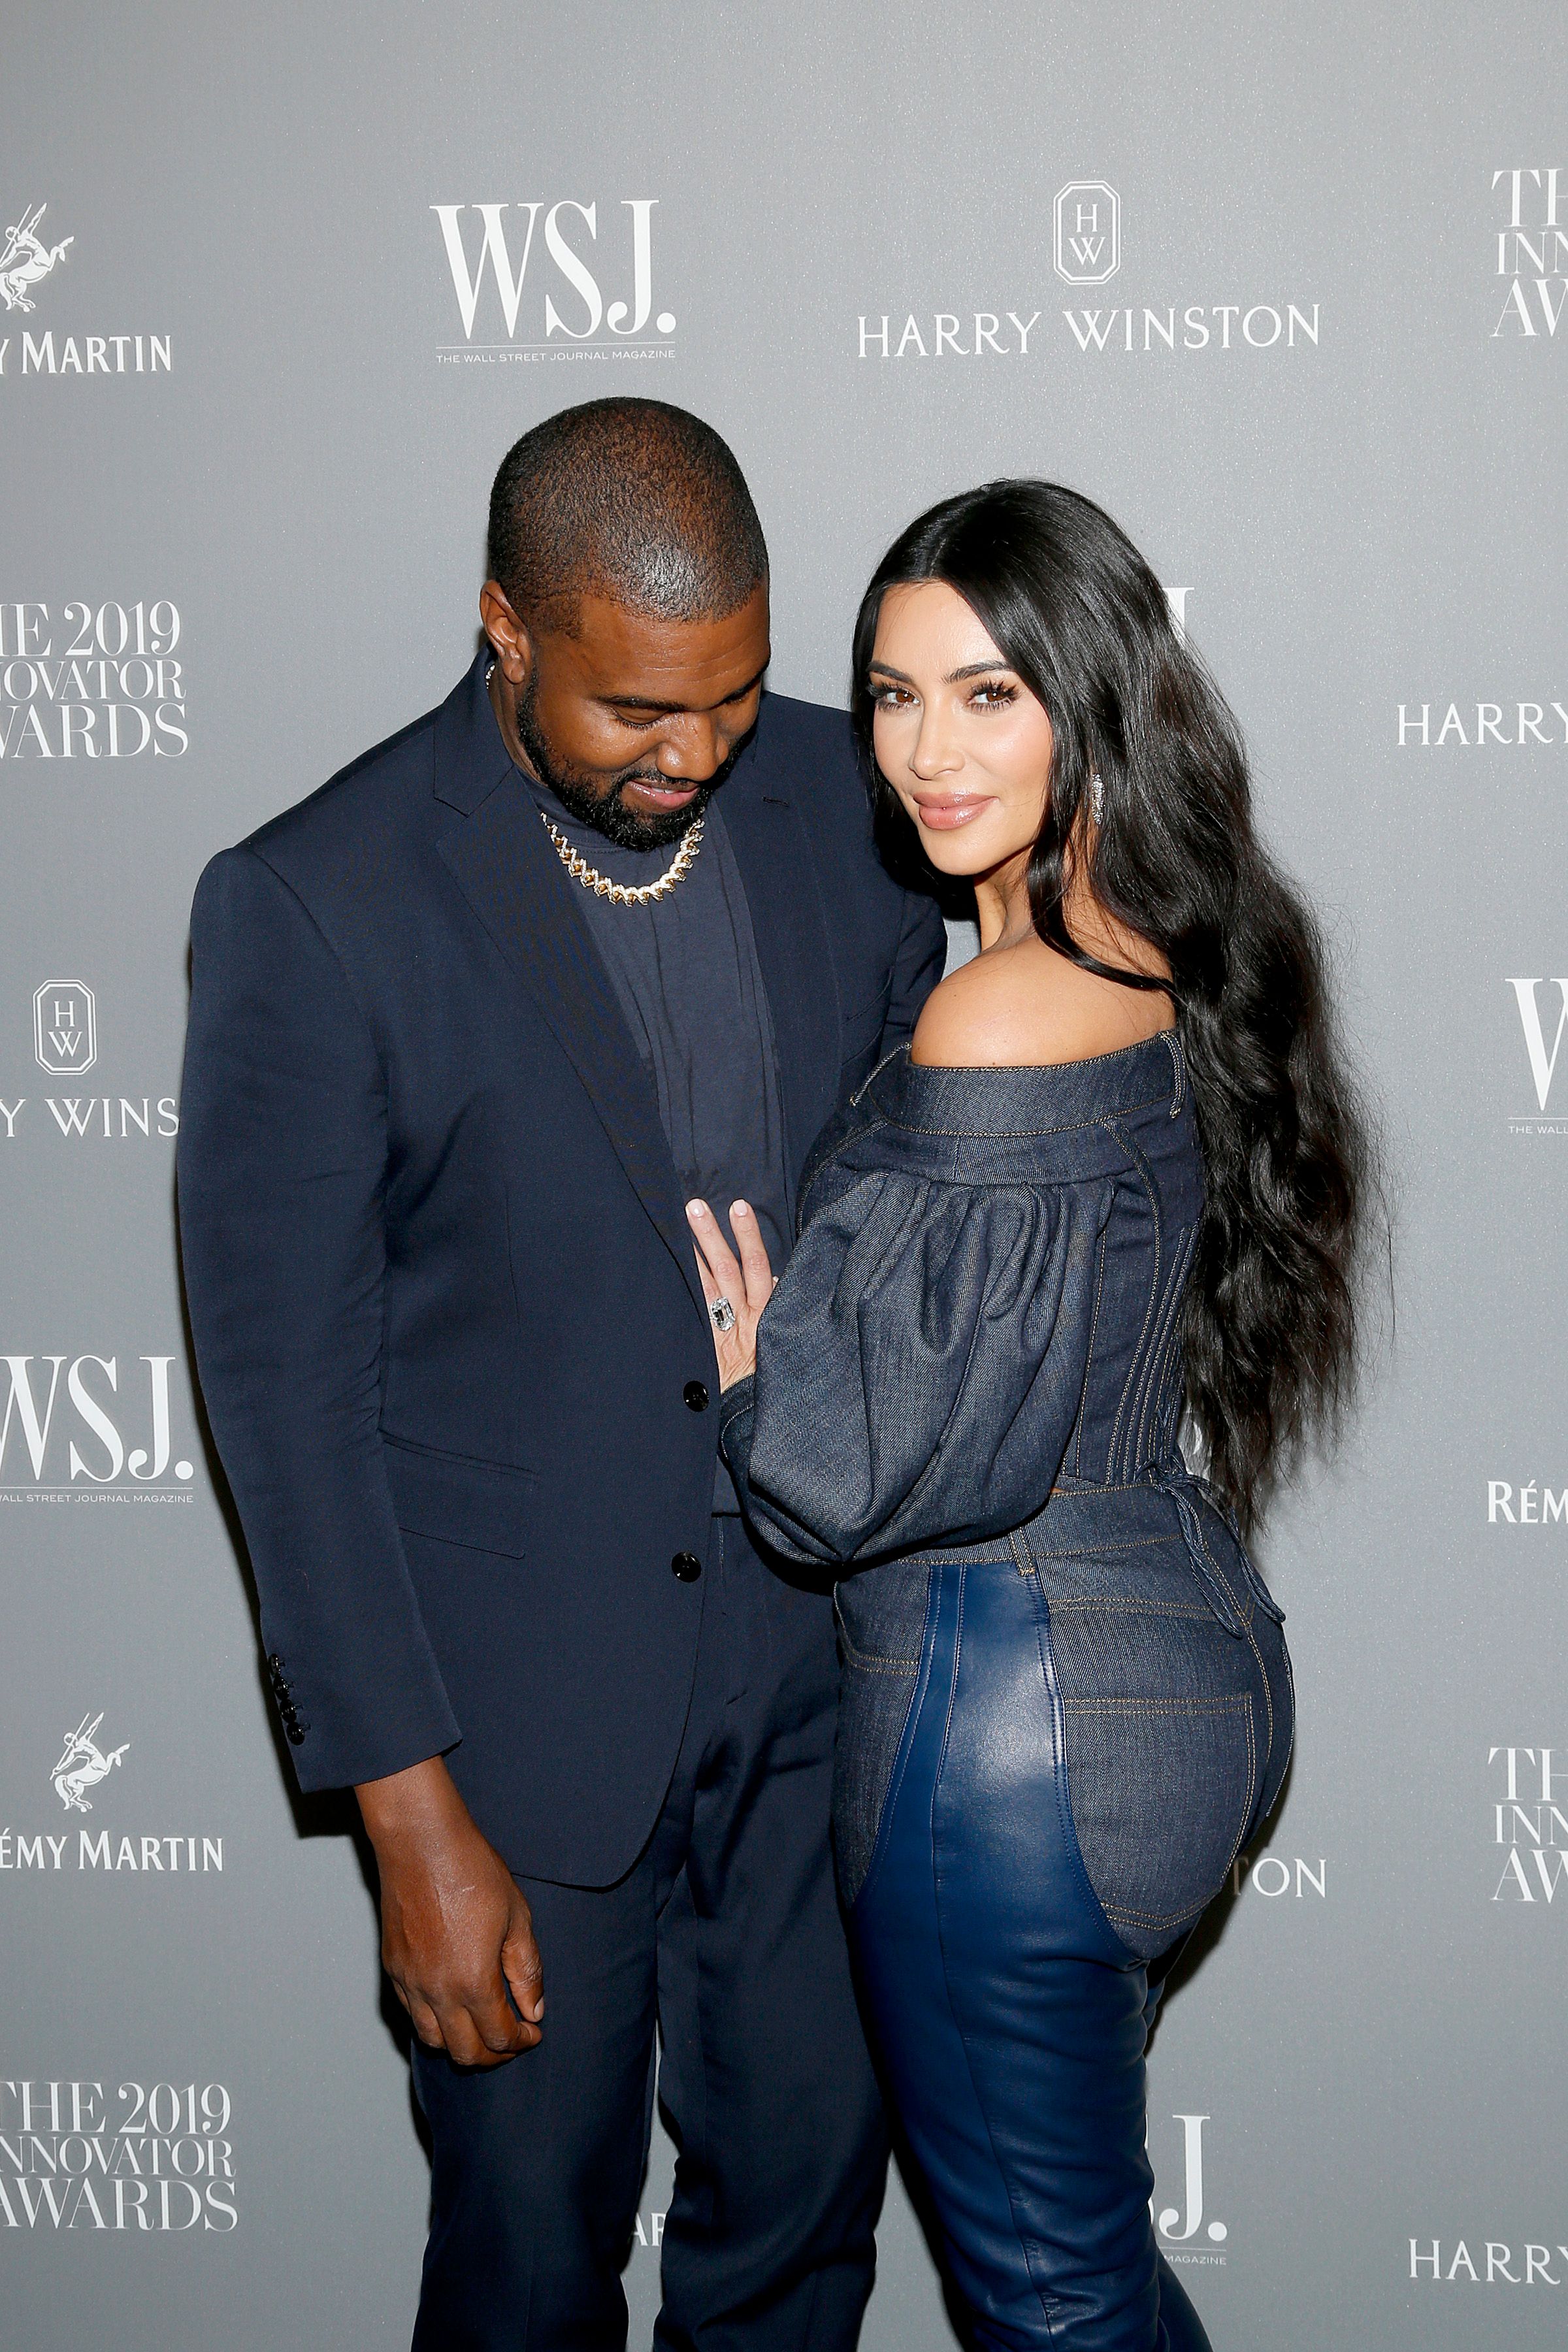 Kanye West and Kim Kardashian West at the WSJ. Magazine 2019 Innovator Awards on November 06, 2019 | Photo: Getty Images